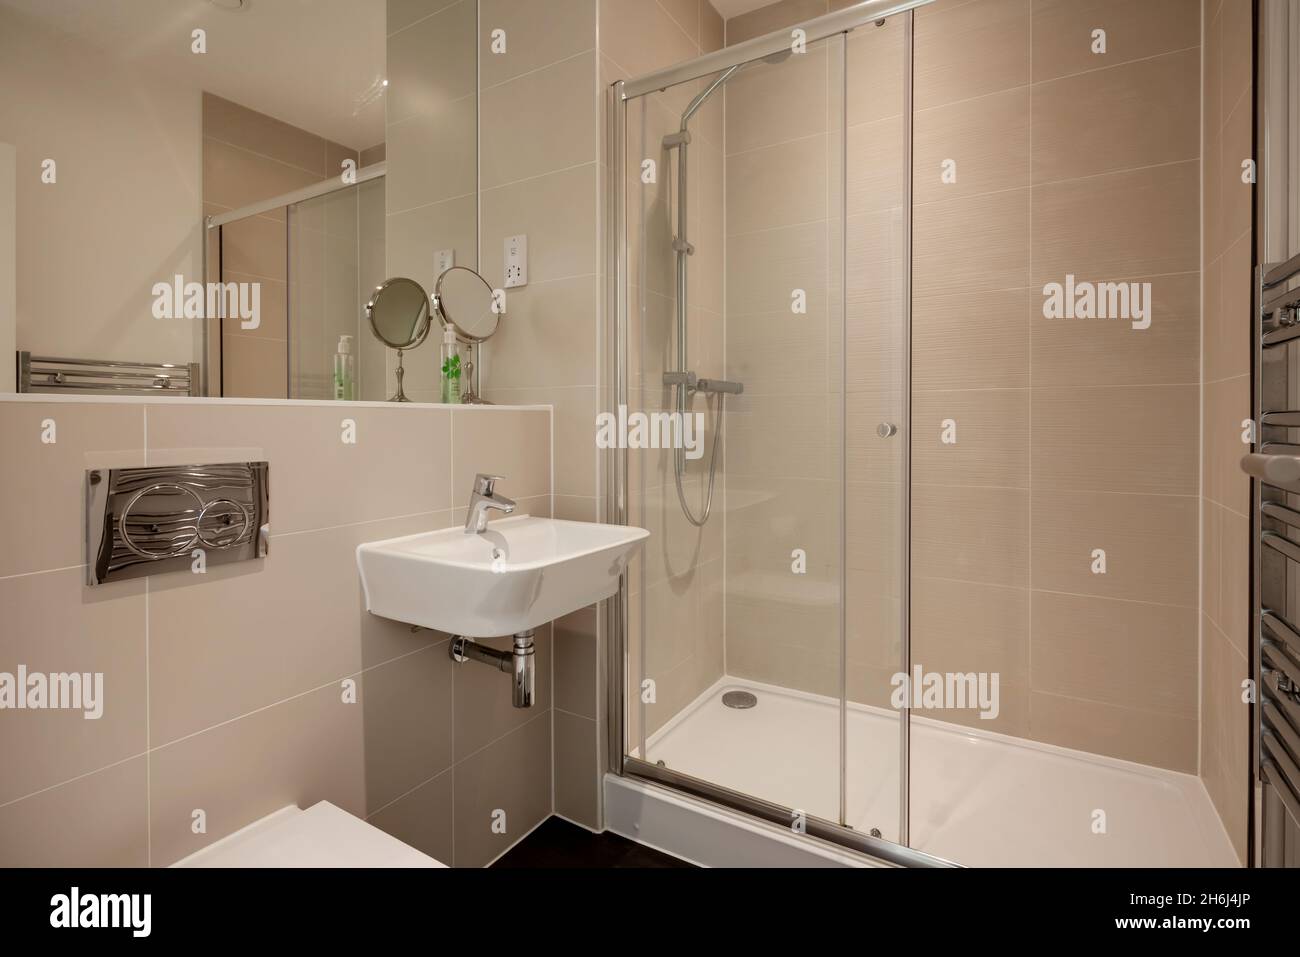 Cambridge, Angleterre - août 6 2019 : salle de bains/douche moderne partiellement carrelée avec lavabo en céramique mural, porte-serviettes, cabine de douche et grand miroir Banque D'Images